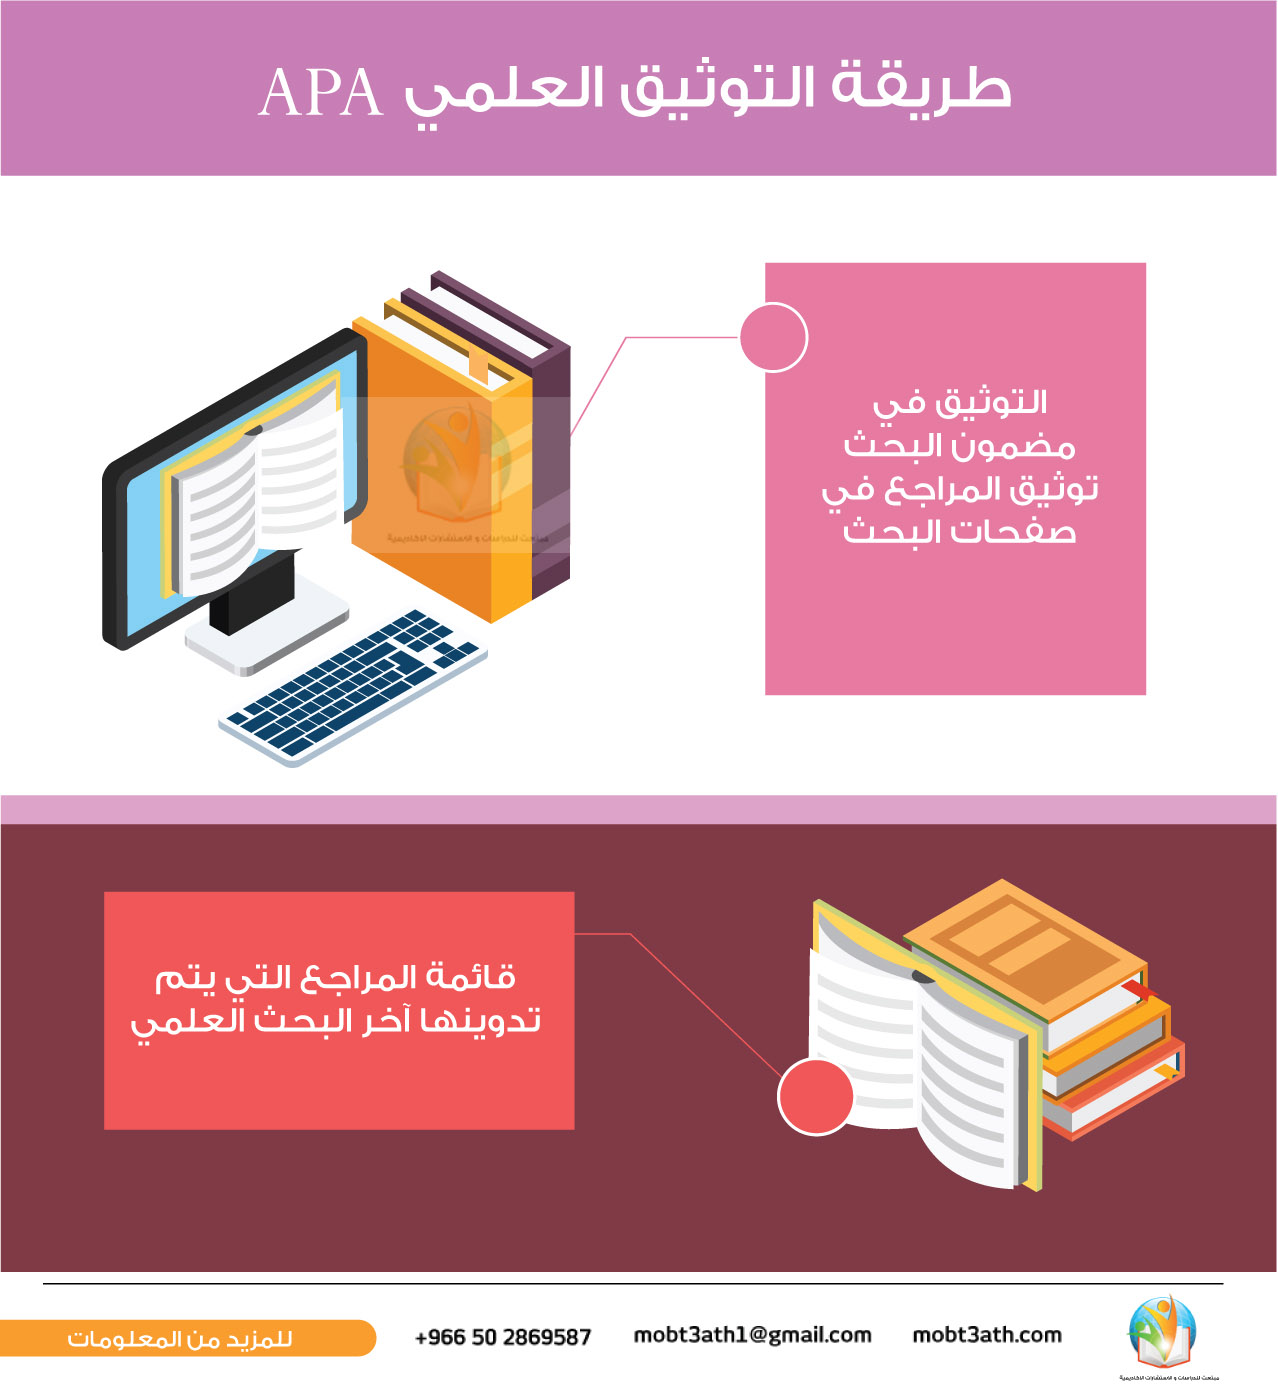 طريقة التوثيق العلمي APA، وأهم صفات منهج البحث العلمي
